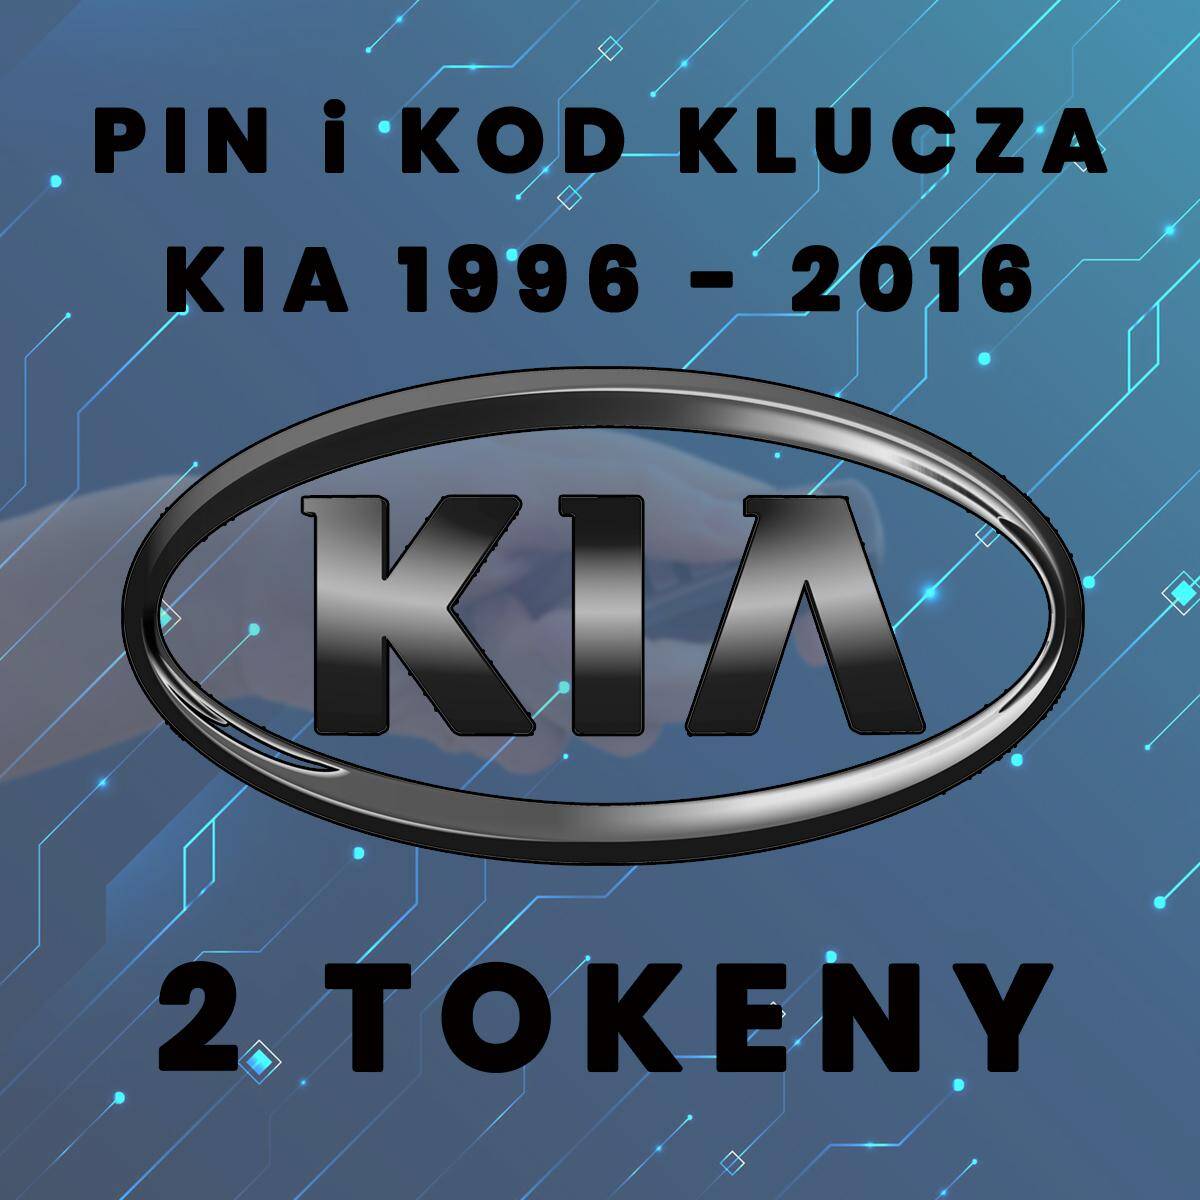 Pin i kod klucza Kia rocznik 1996 - 2016